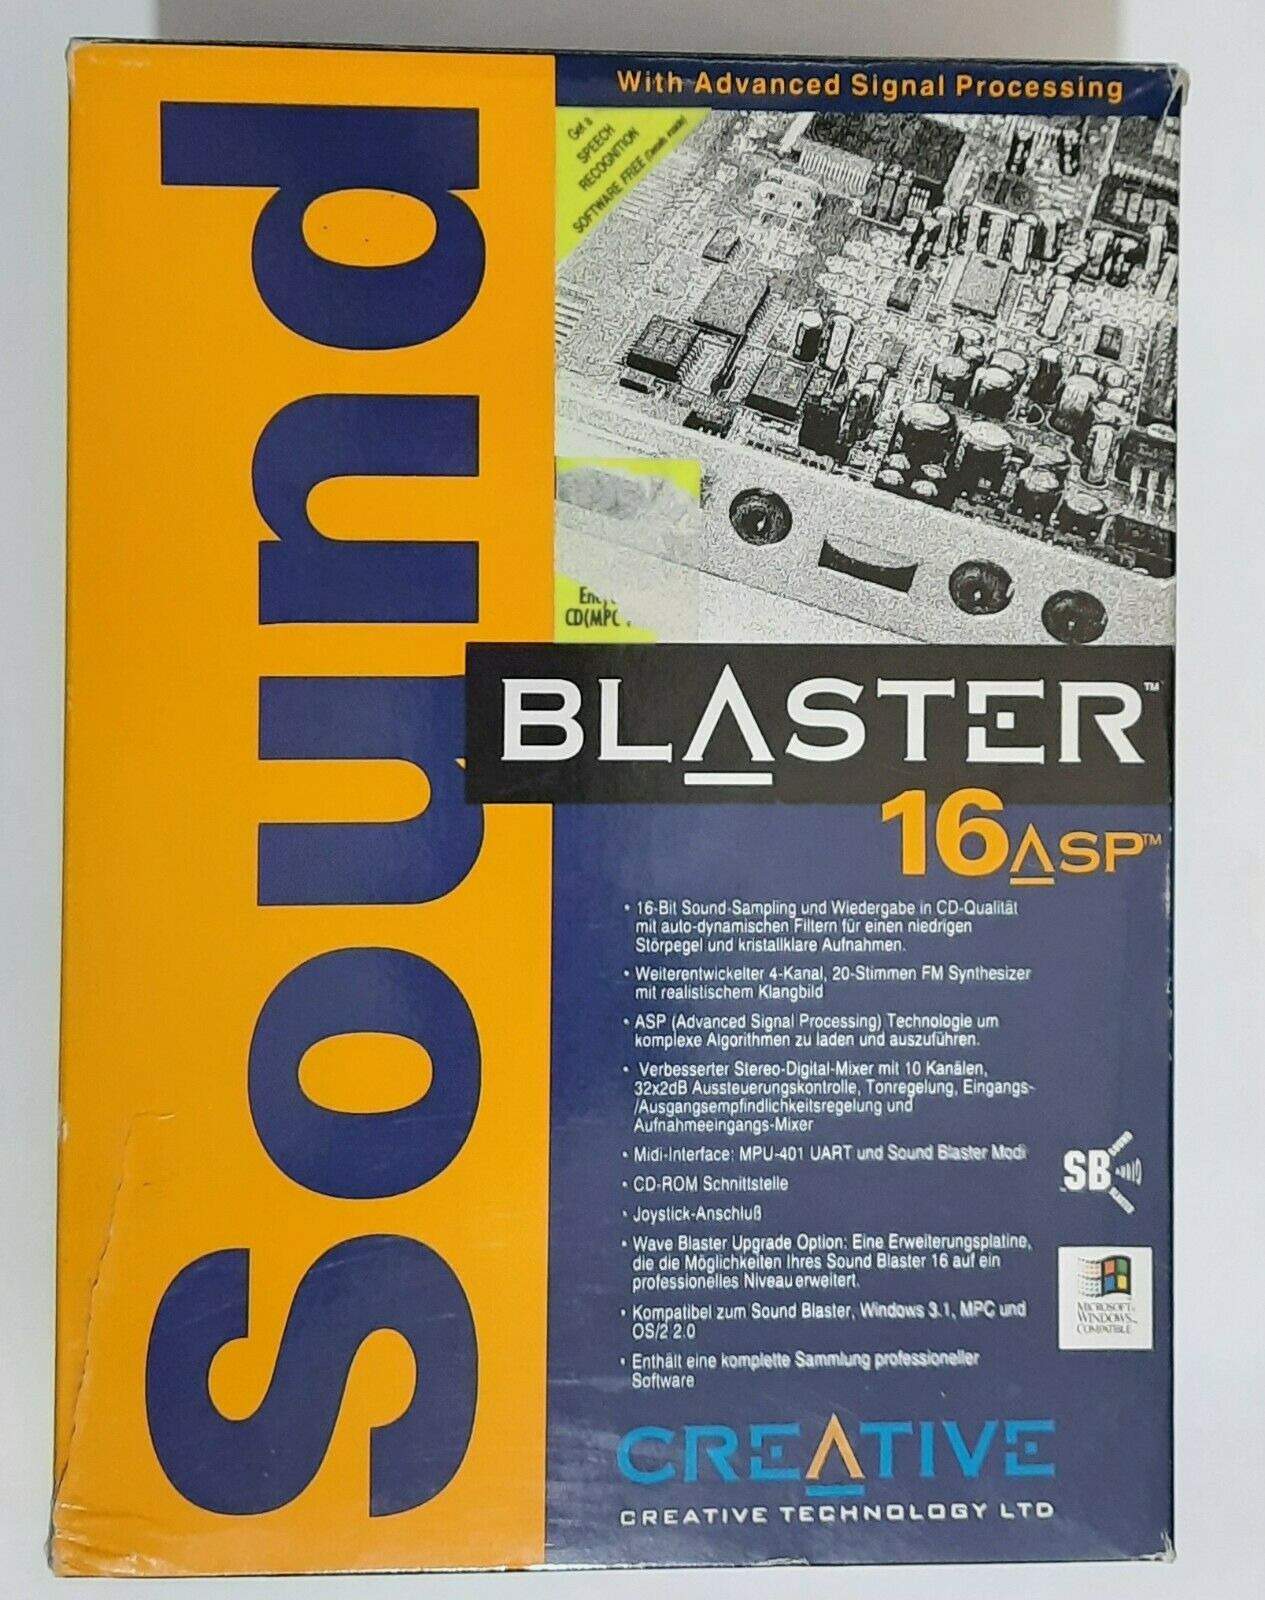 DOS Days - Sound Blaster 16